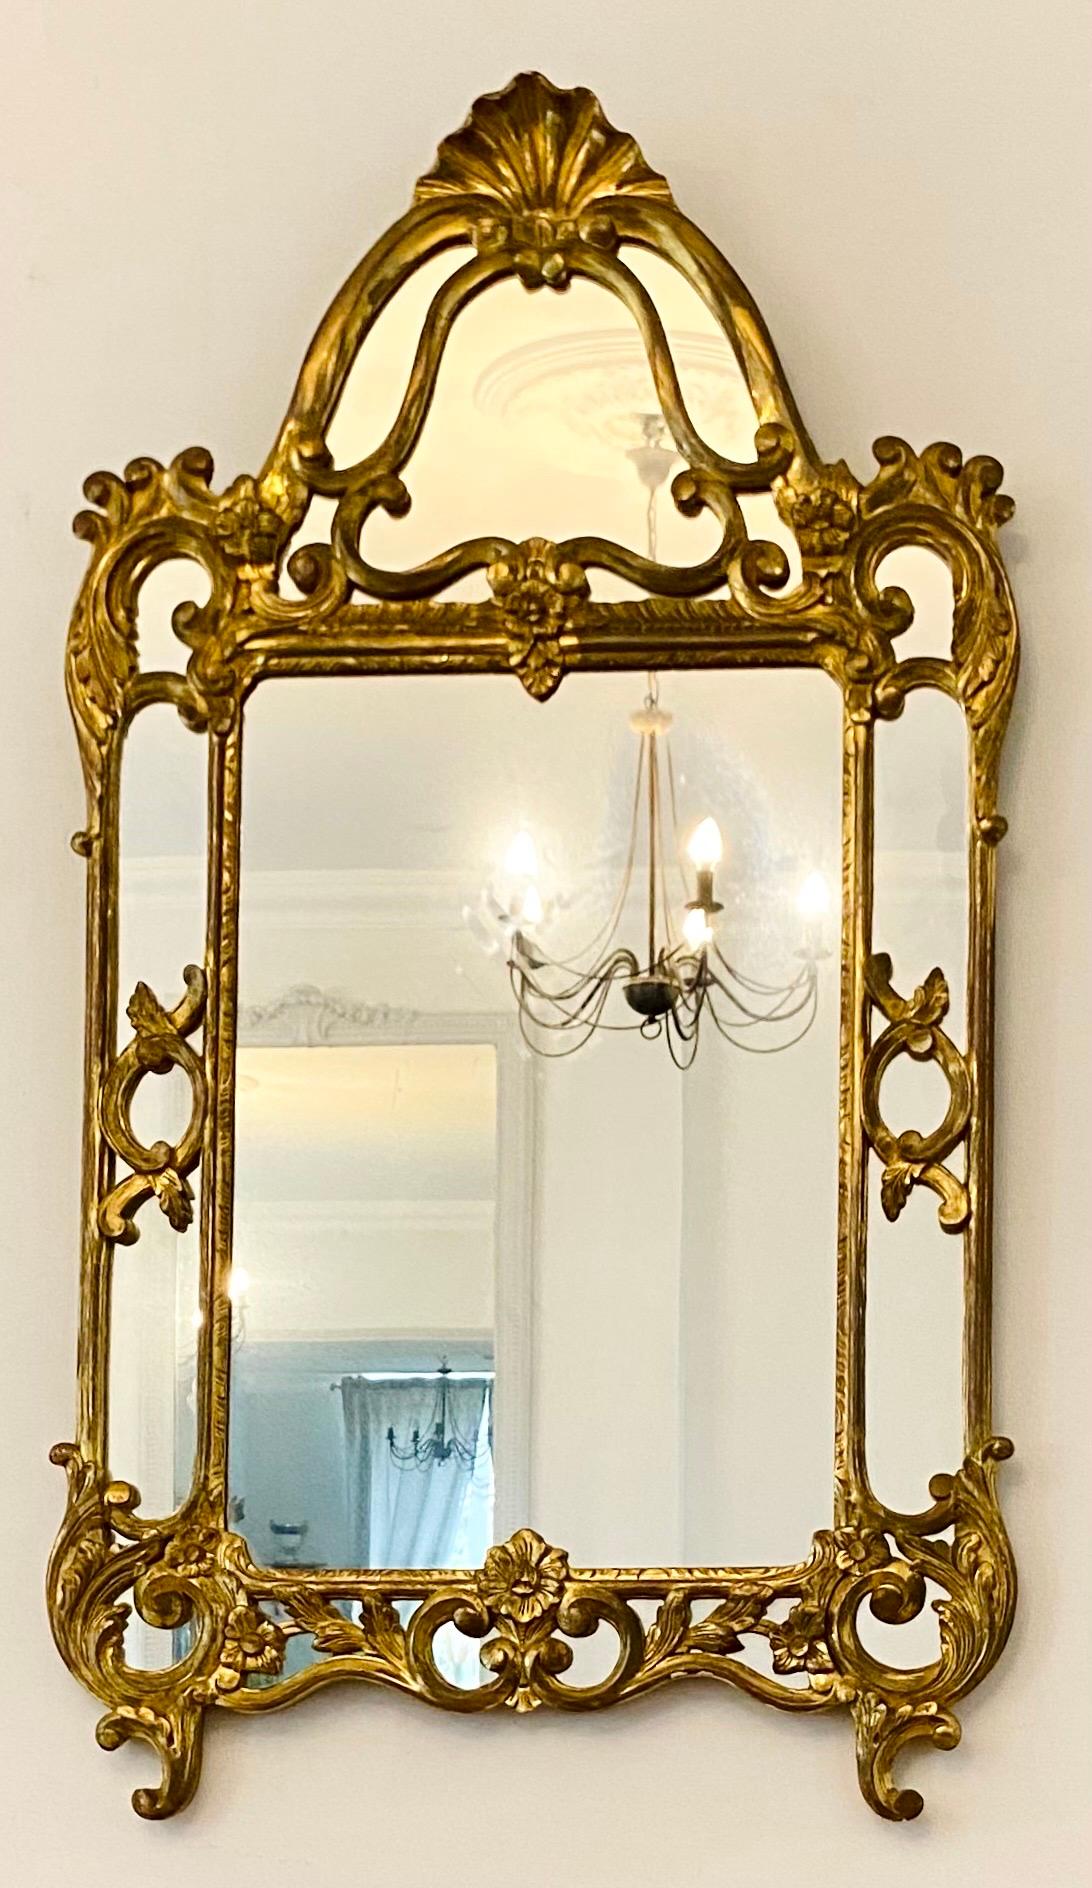 Magnifique miroir à parcloses de style Louis XIV en bois doré.
Dans le style des miroirs italiens, style baroque.
Décor de feuillages et de fleurs entrelacés.
Fronton décoré de coquillages.
Cadre doublement doré magnifiquement travaillé.
Tous les